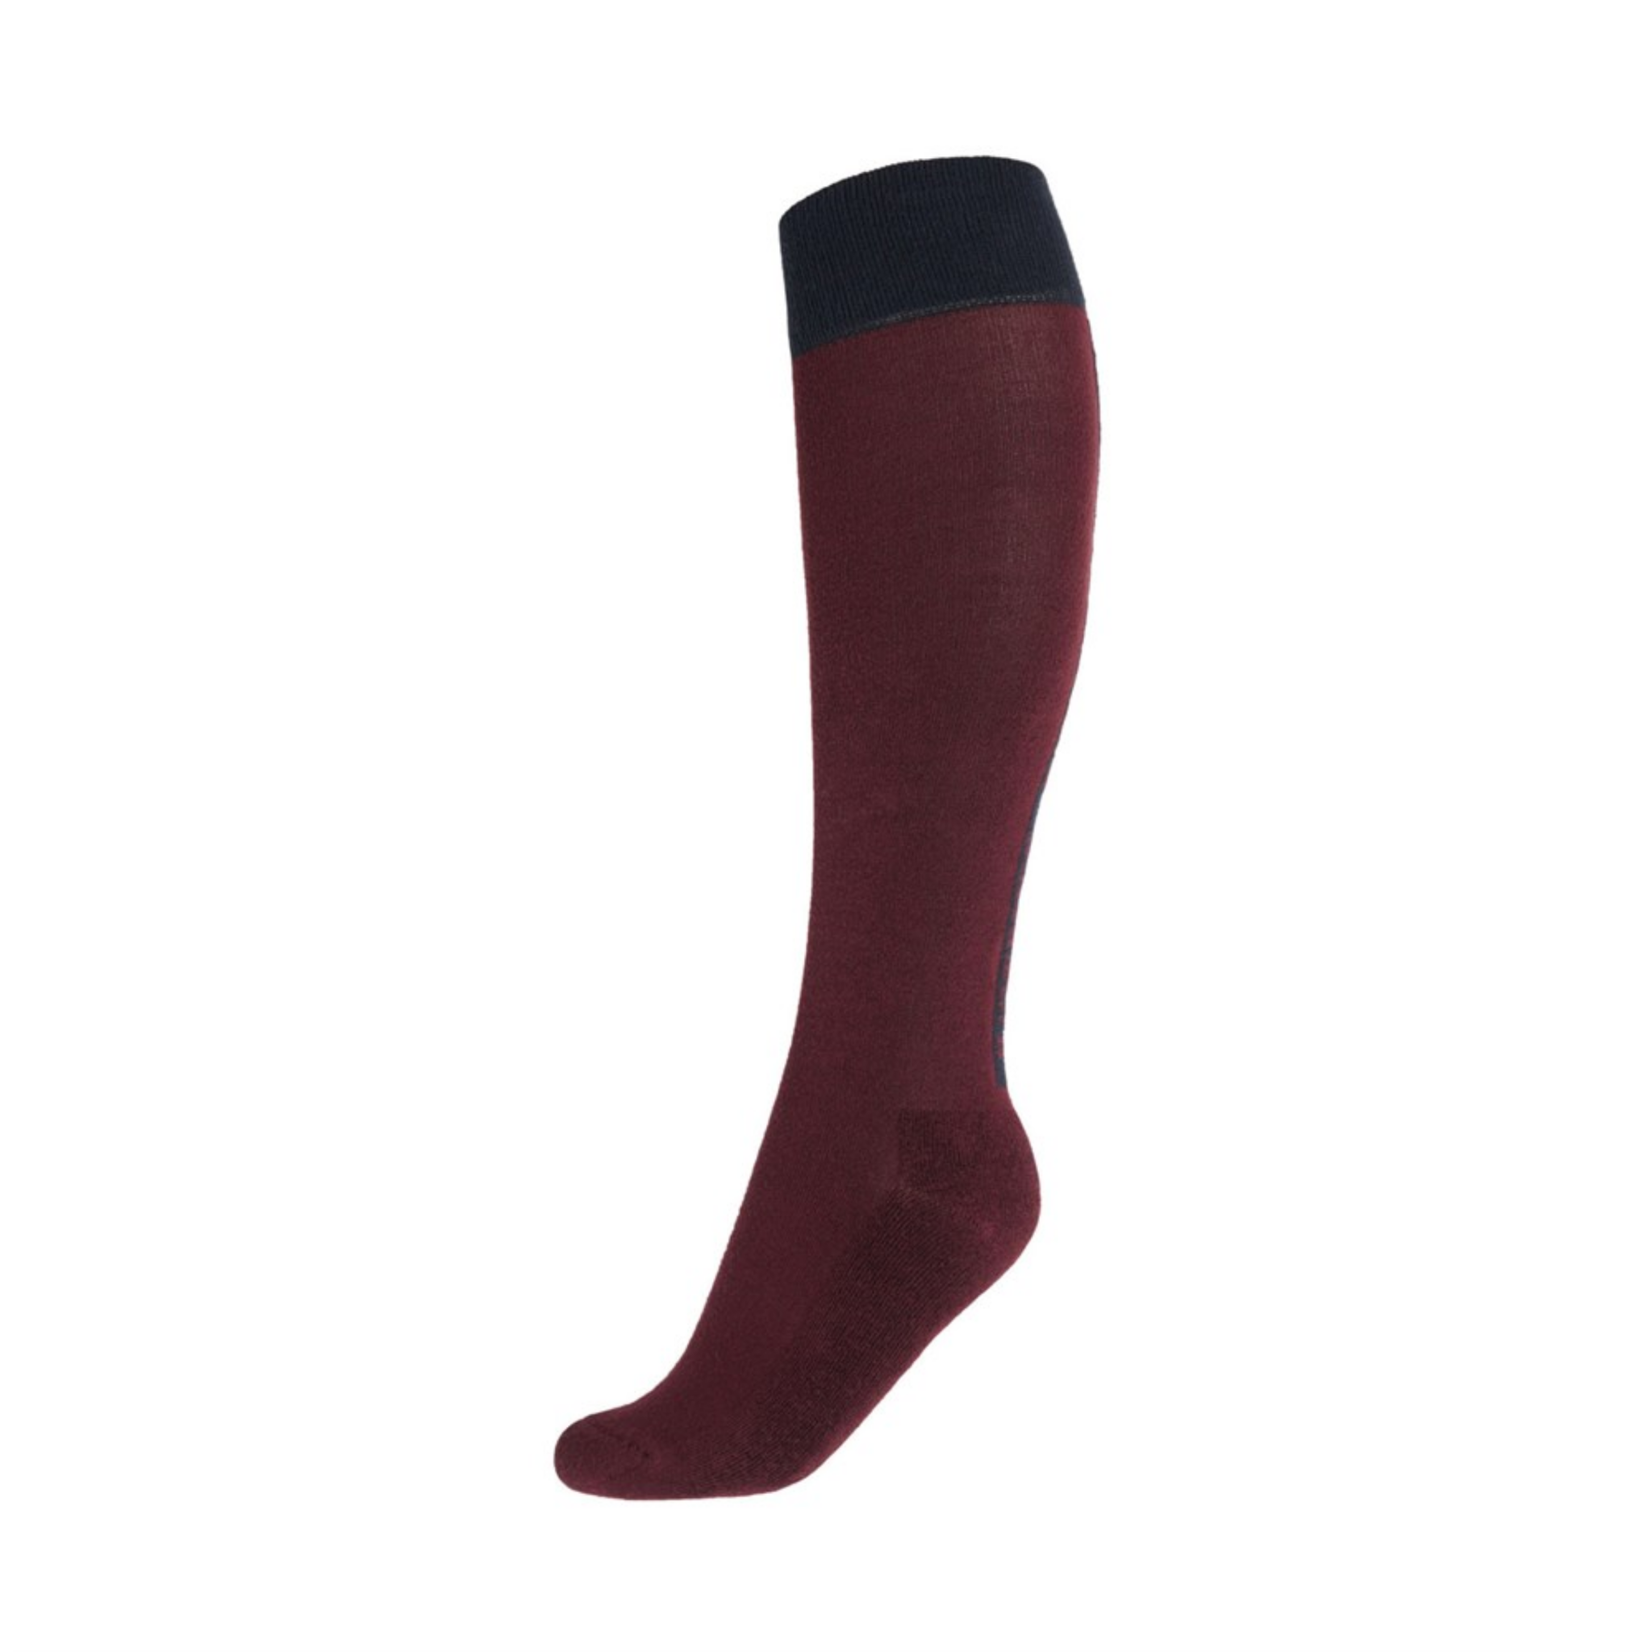 B-Vertigo 31383 - B Vertigo Janelle  Women's Knee Socks